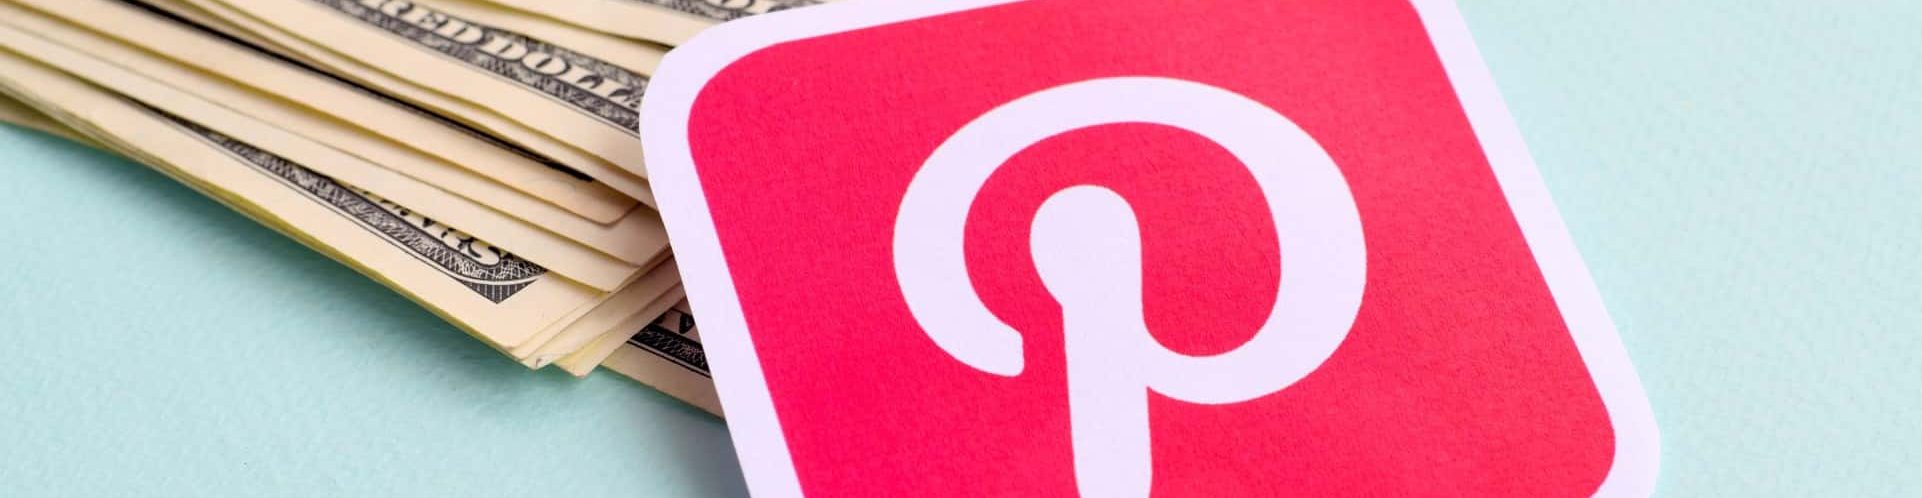 5 motivos para utilizar o Pinterest no seu negócio imobiliário